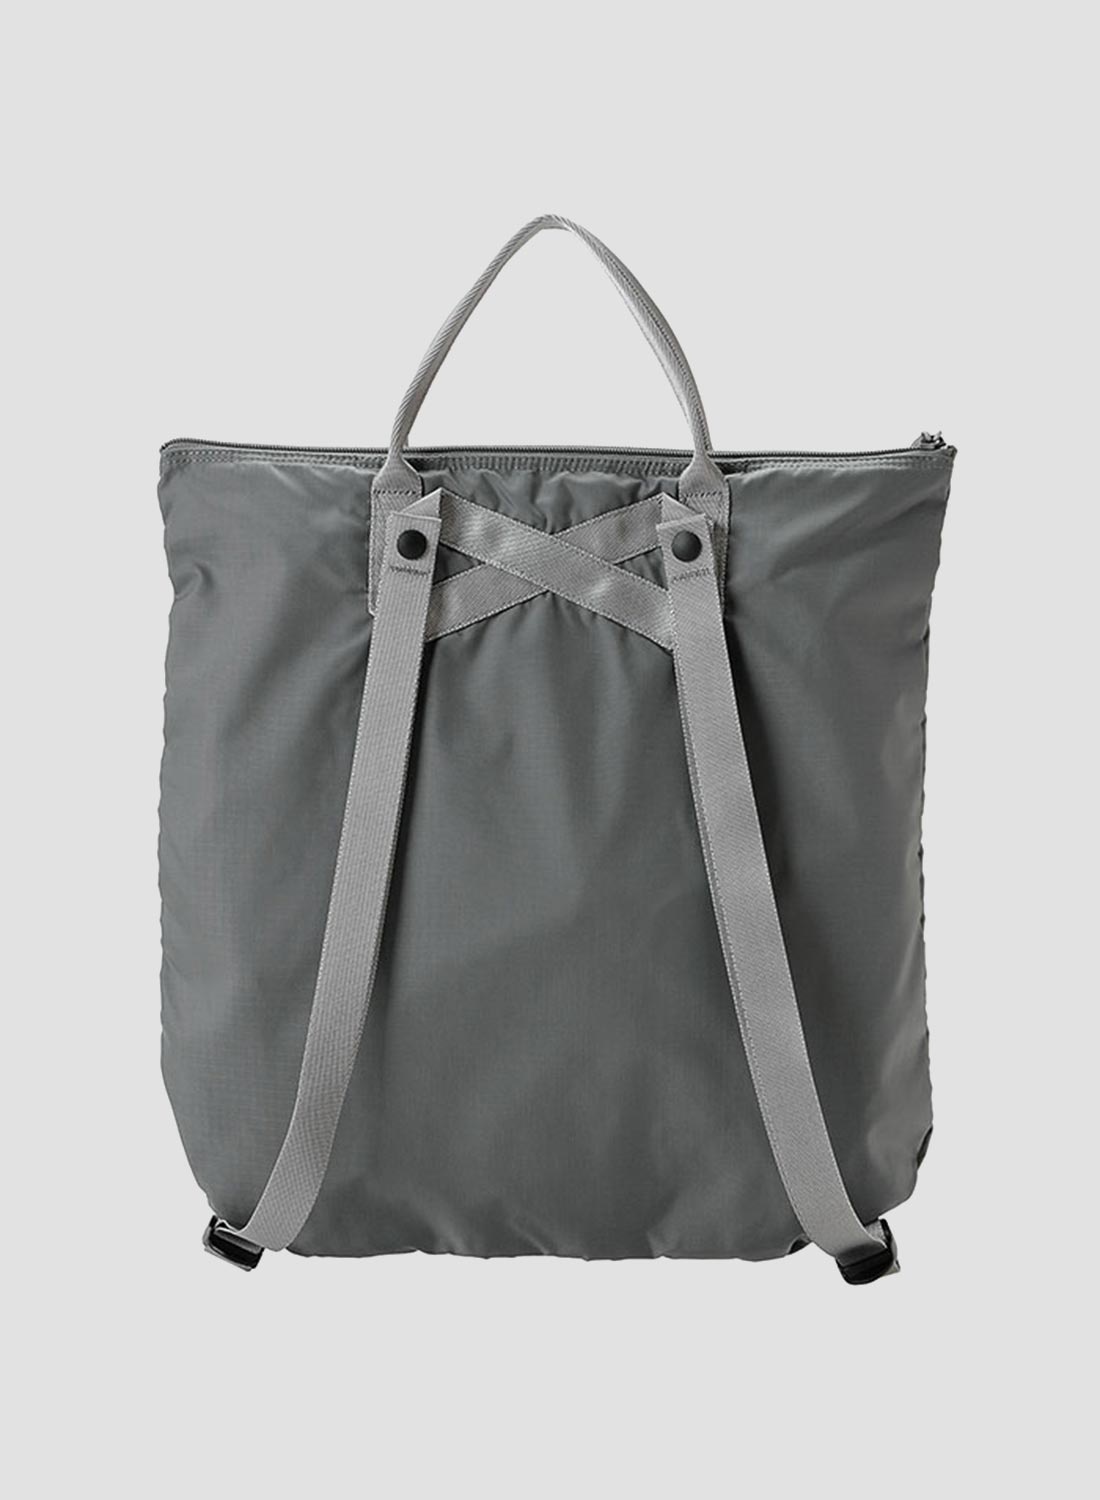 Porter-Yoshida & Co Flex 2-Way Tote Bag in Grey - 3